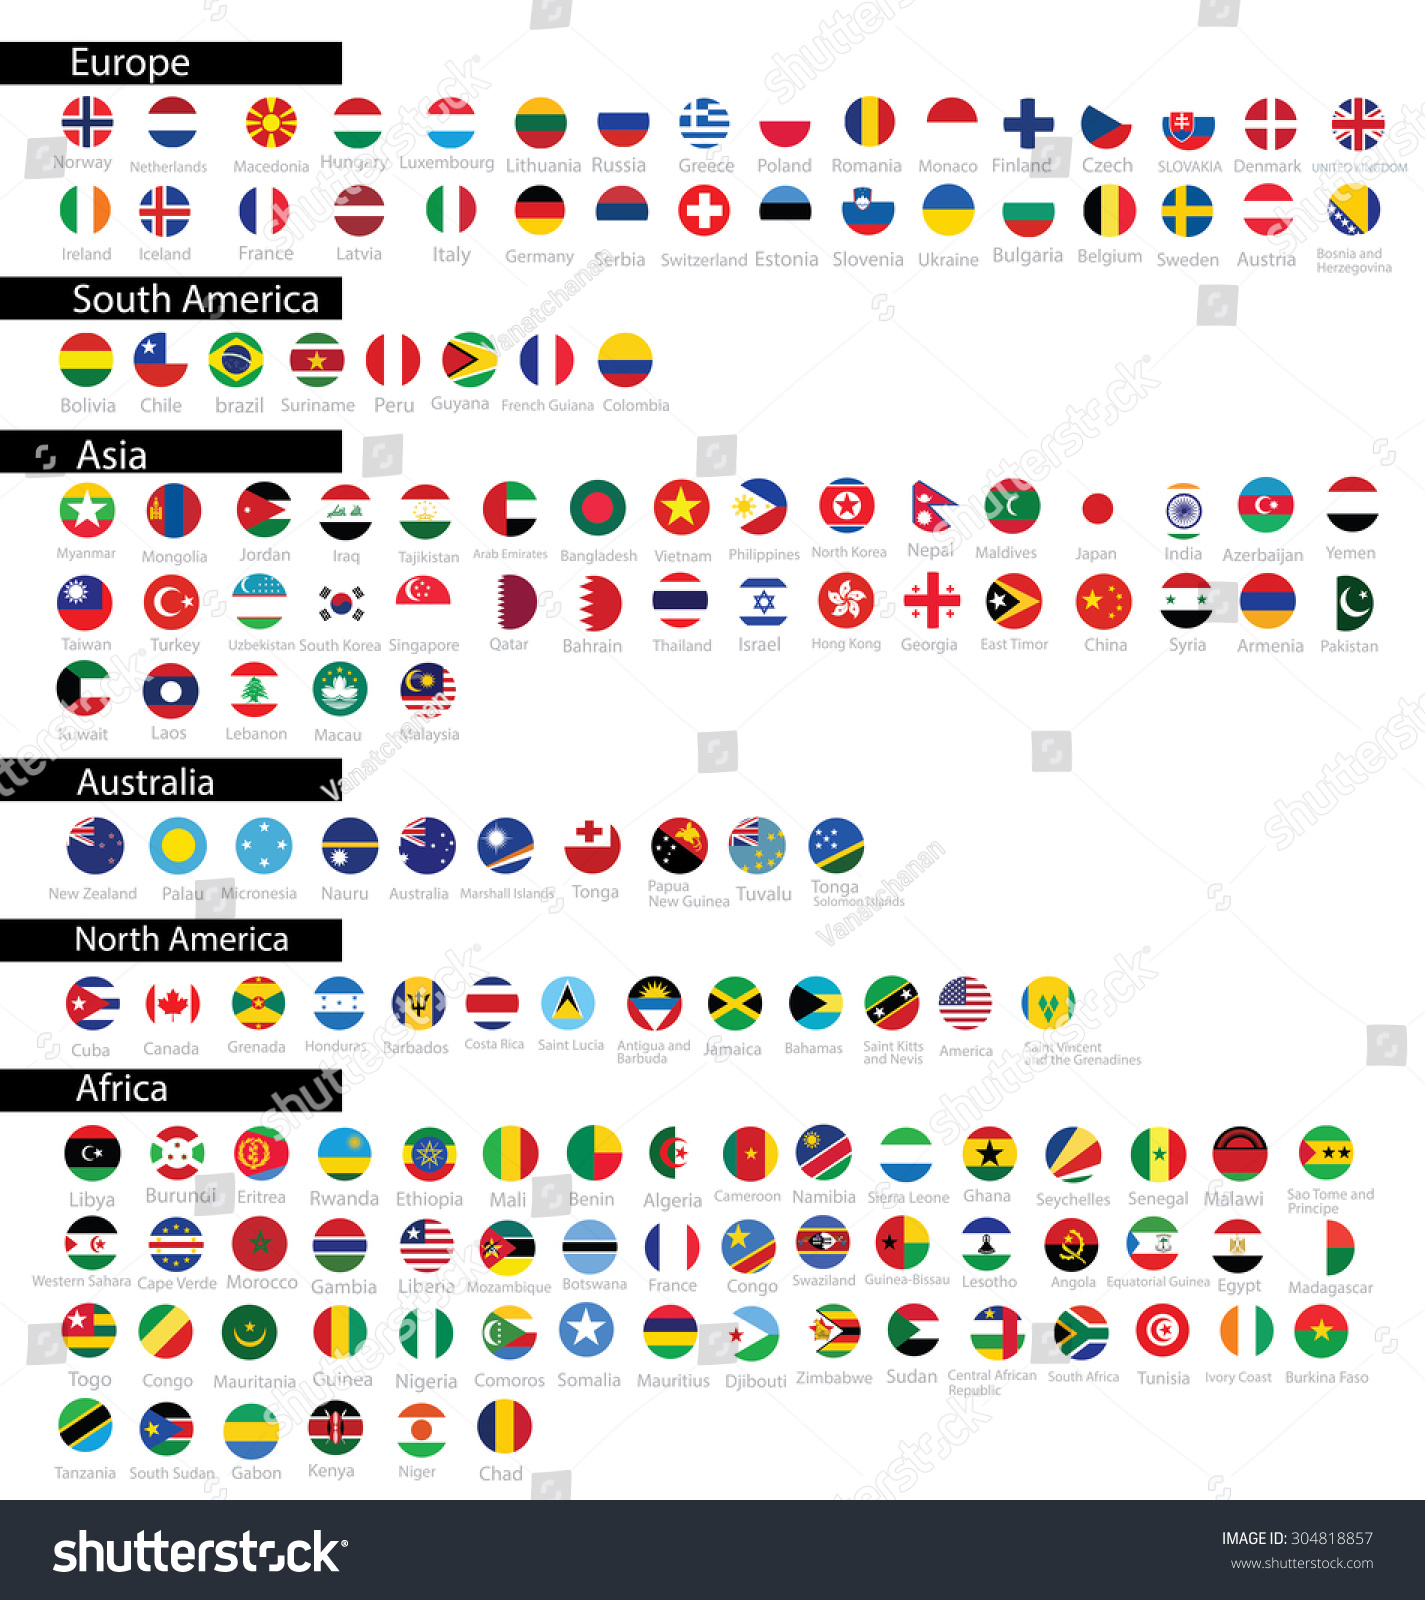 Flag Of The World. Vector Illustration. - 304818857 : Shutterstock